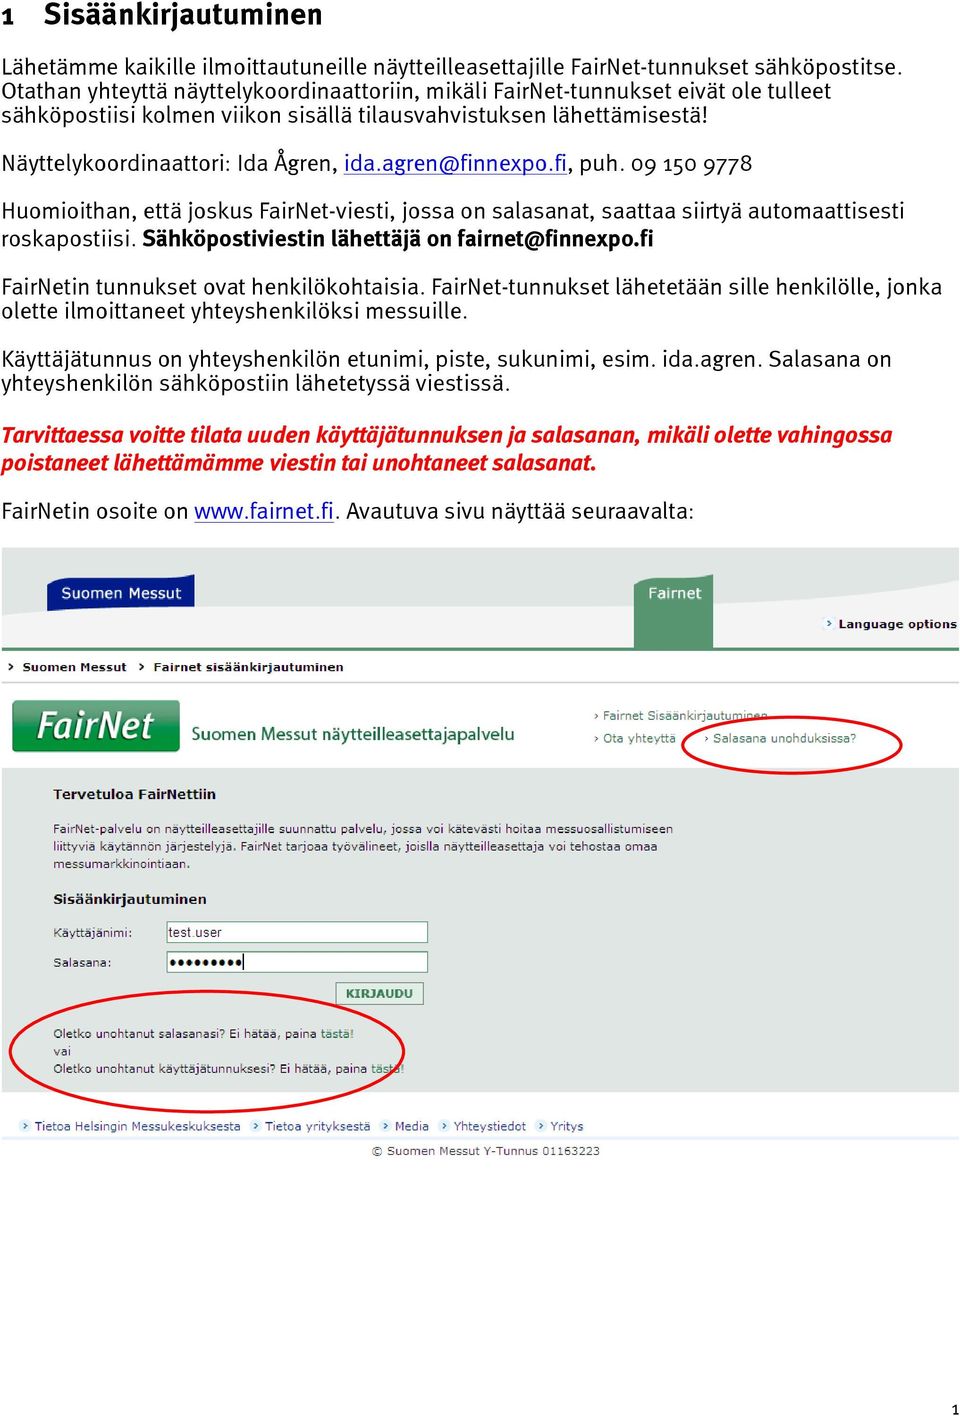 agren@finnexpo.fi, puh. 09 150 9778 Huomioithan, että joskus FairNet-viesti, jossa on salasanat, saattaa siirtyä automaattisesti roskapostiisi. Sähköpostiviestin lähettäjä on fairnet@finnexpo.